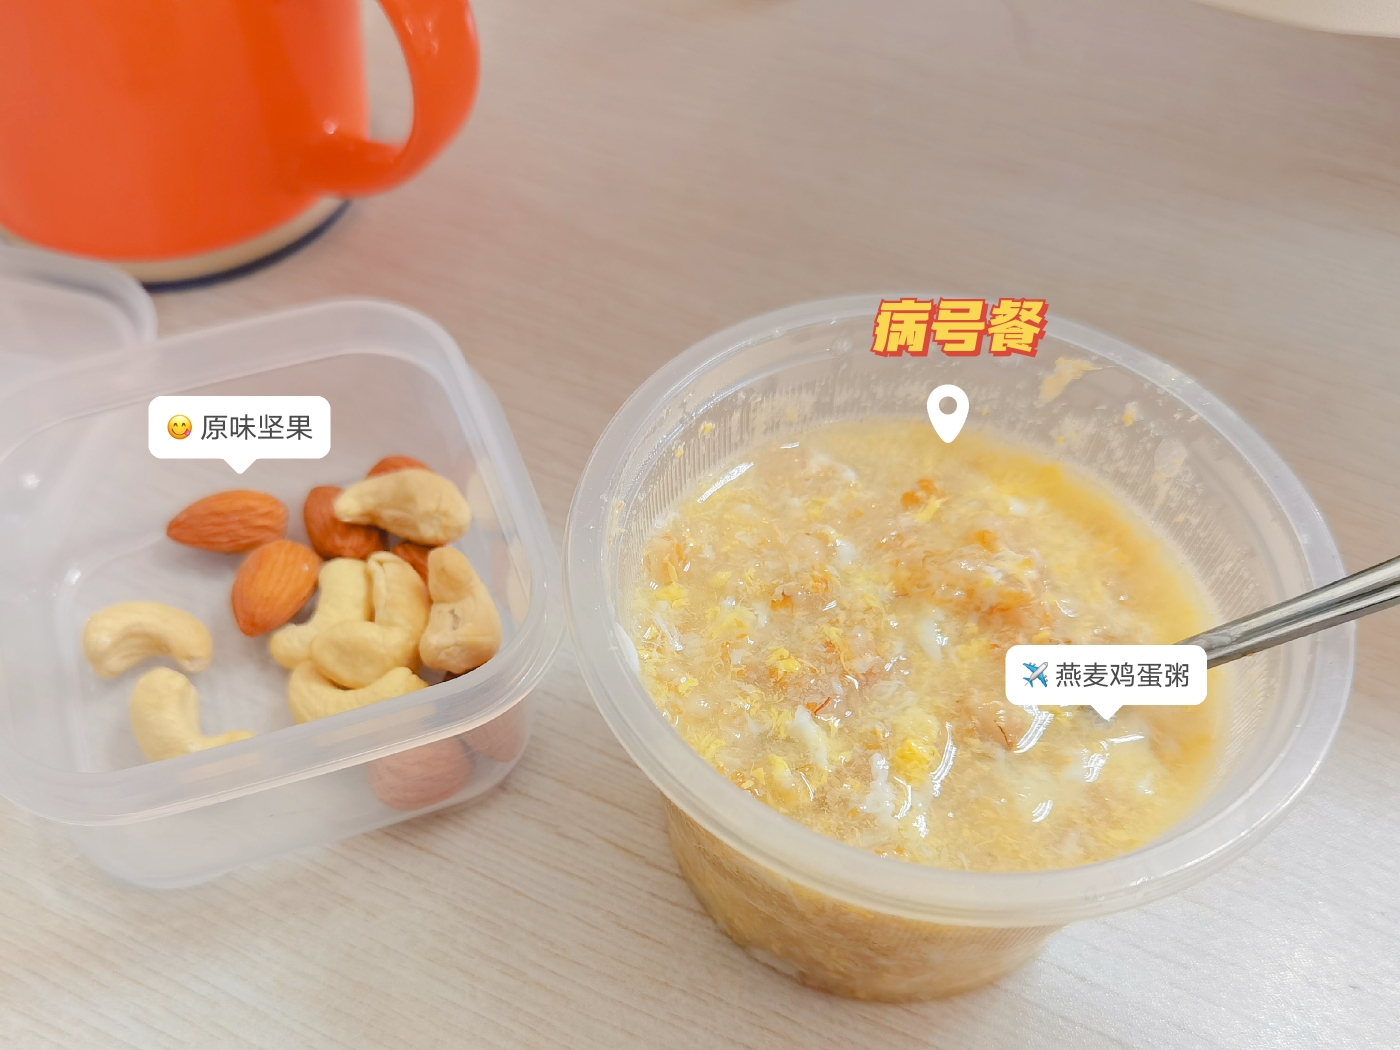 减脂期姨妈期的低gi早餐 五分钟的快手暖暖燕麦鸡蛋粥 中国胃必备的做法